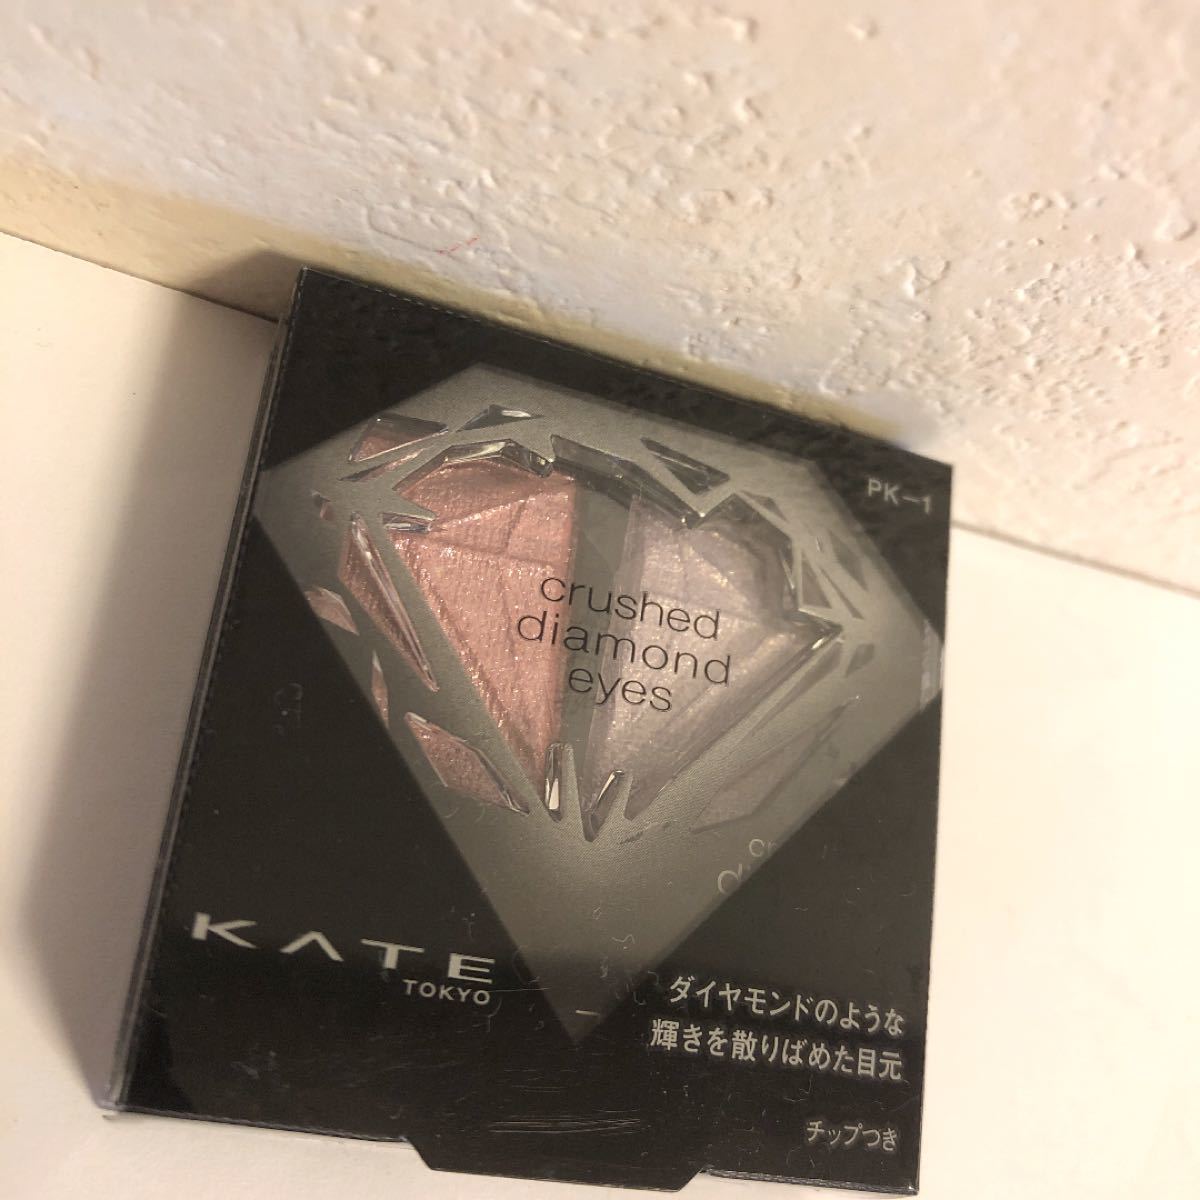 ケイト クラッシュダイヤモンドアイズ  PK-1